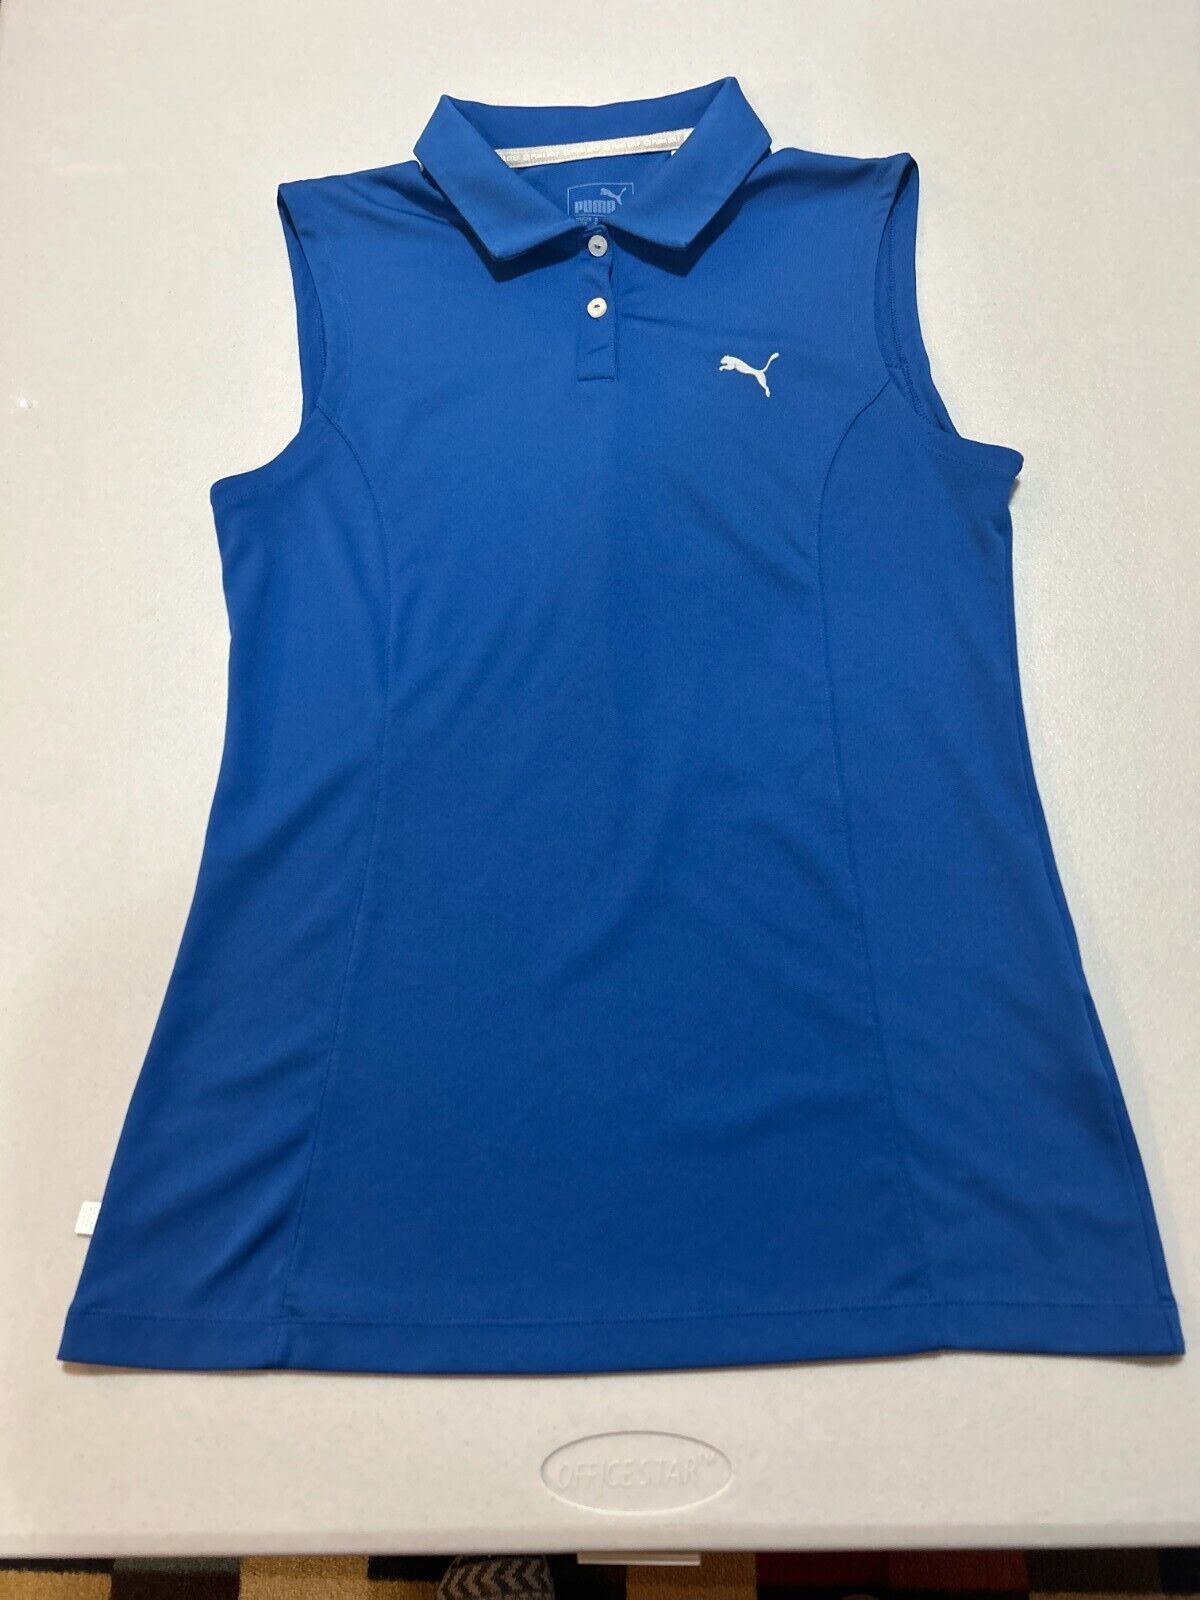 PUMA GOLF Women\'s Blue Sleeveless Golf Shirt (S) Dry Cell Lightweight Material